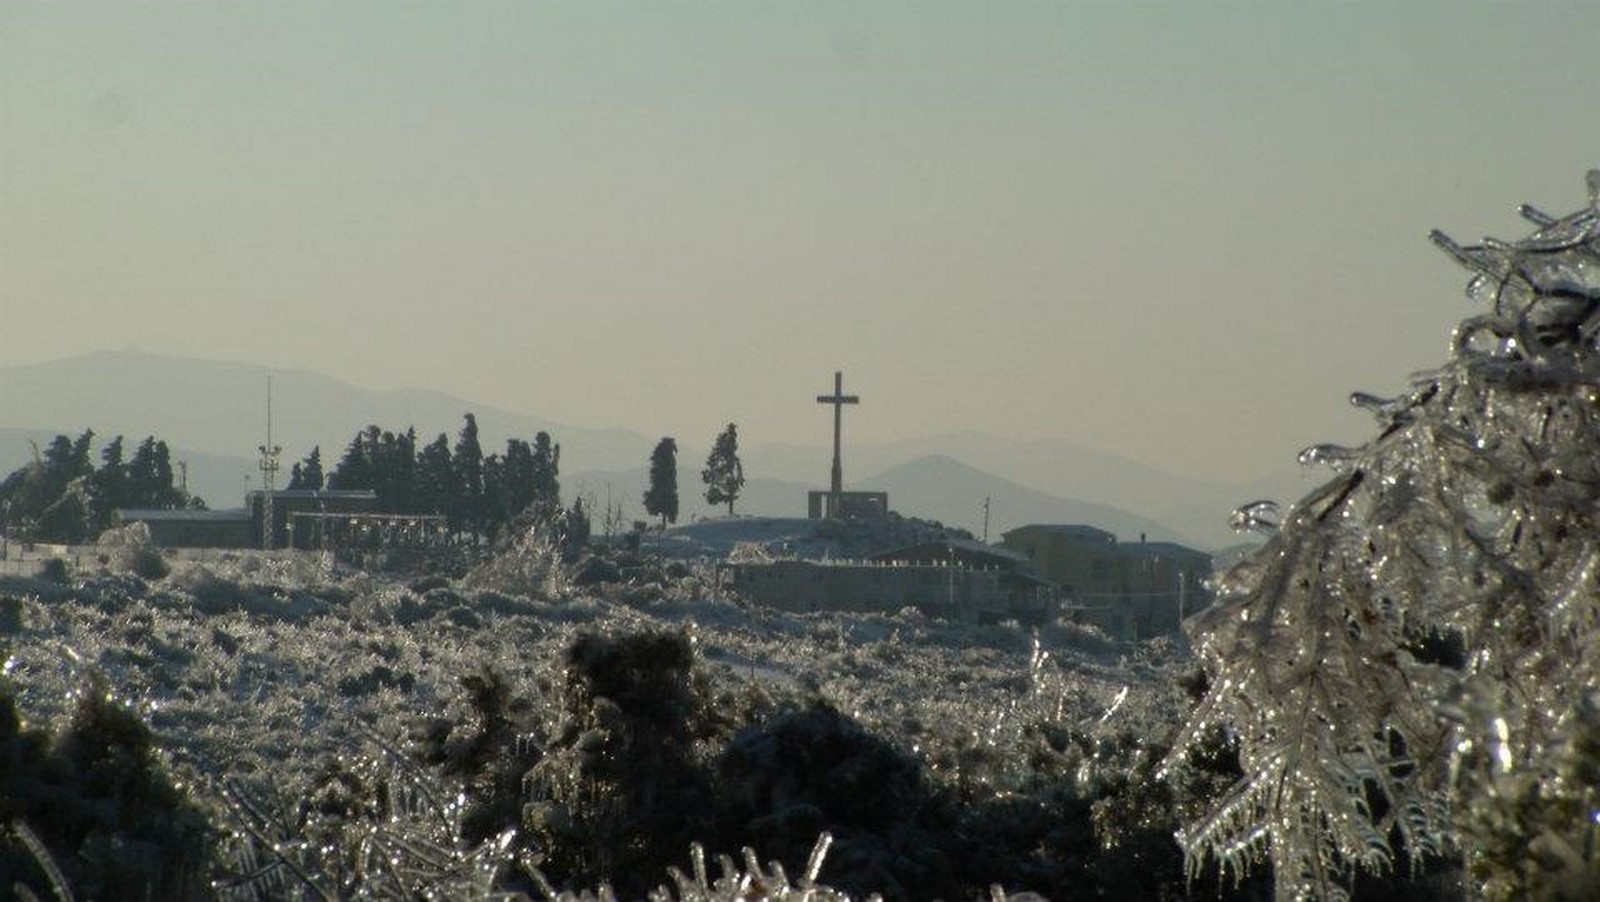 FOTO/VIDEO | Prisjetimo se nevjerojatne zime 2012. godine u Neumu – na današnji dan pad dalekovoda